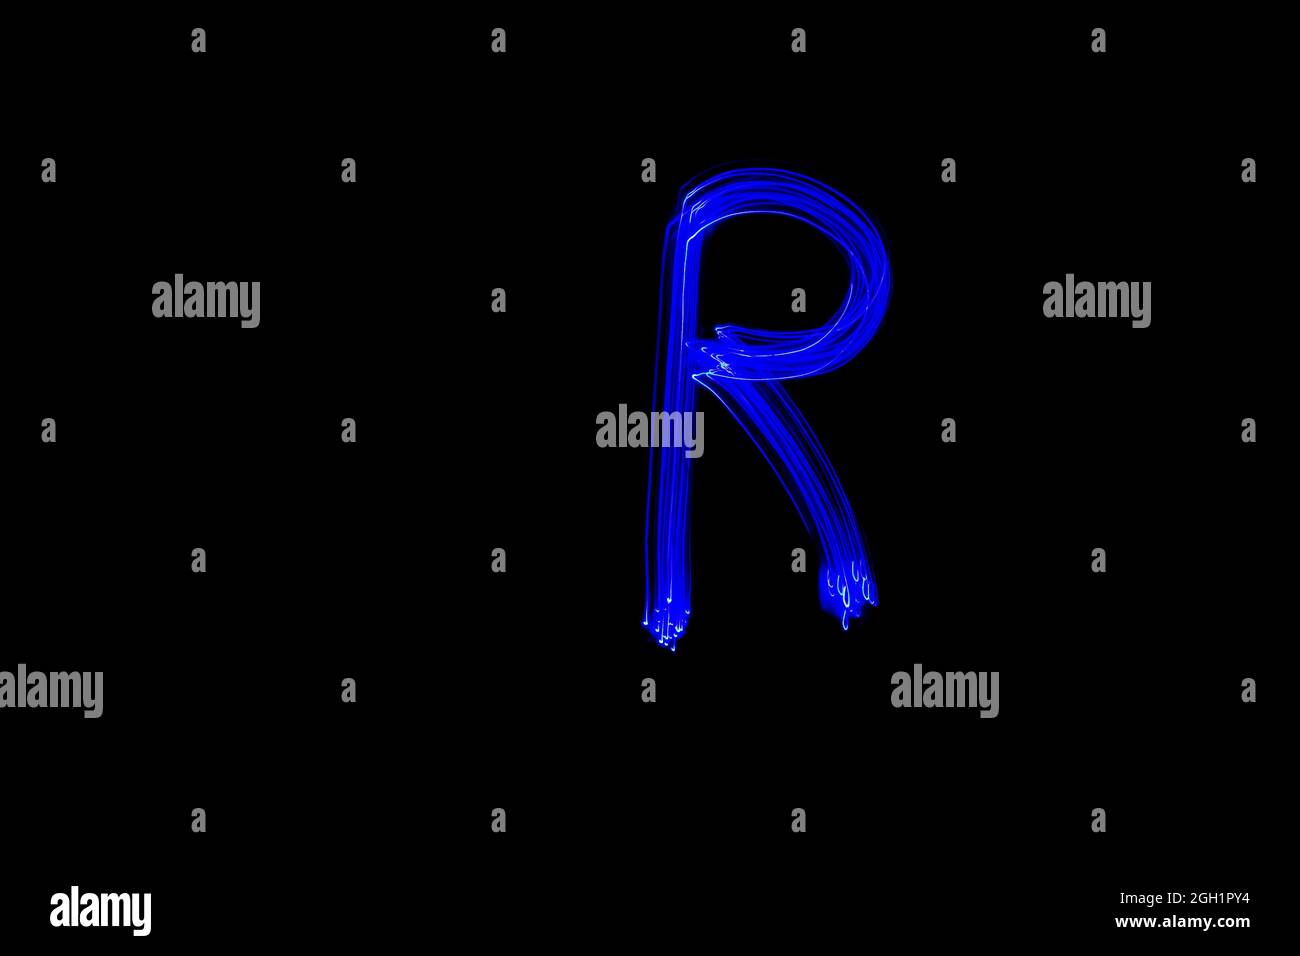 Lettre R. lettre peinture alphabet clair. Photographie en exposition prolongée. Dessin de la lettre R avec des lumières bleues sur fond noir. Banque D'Images